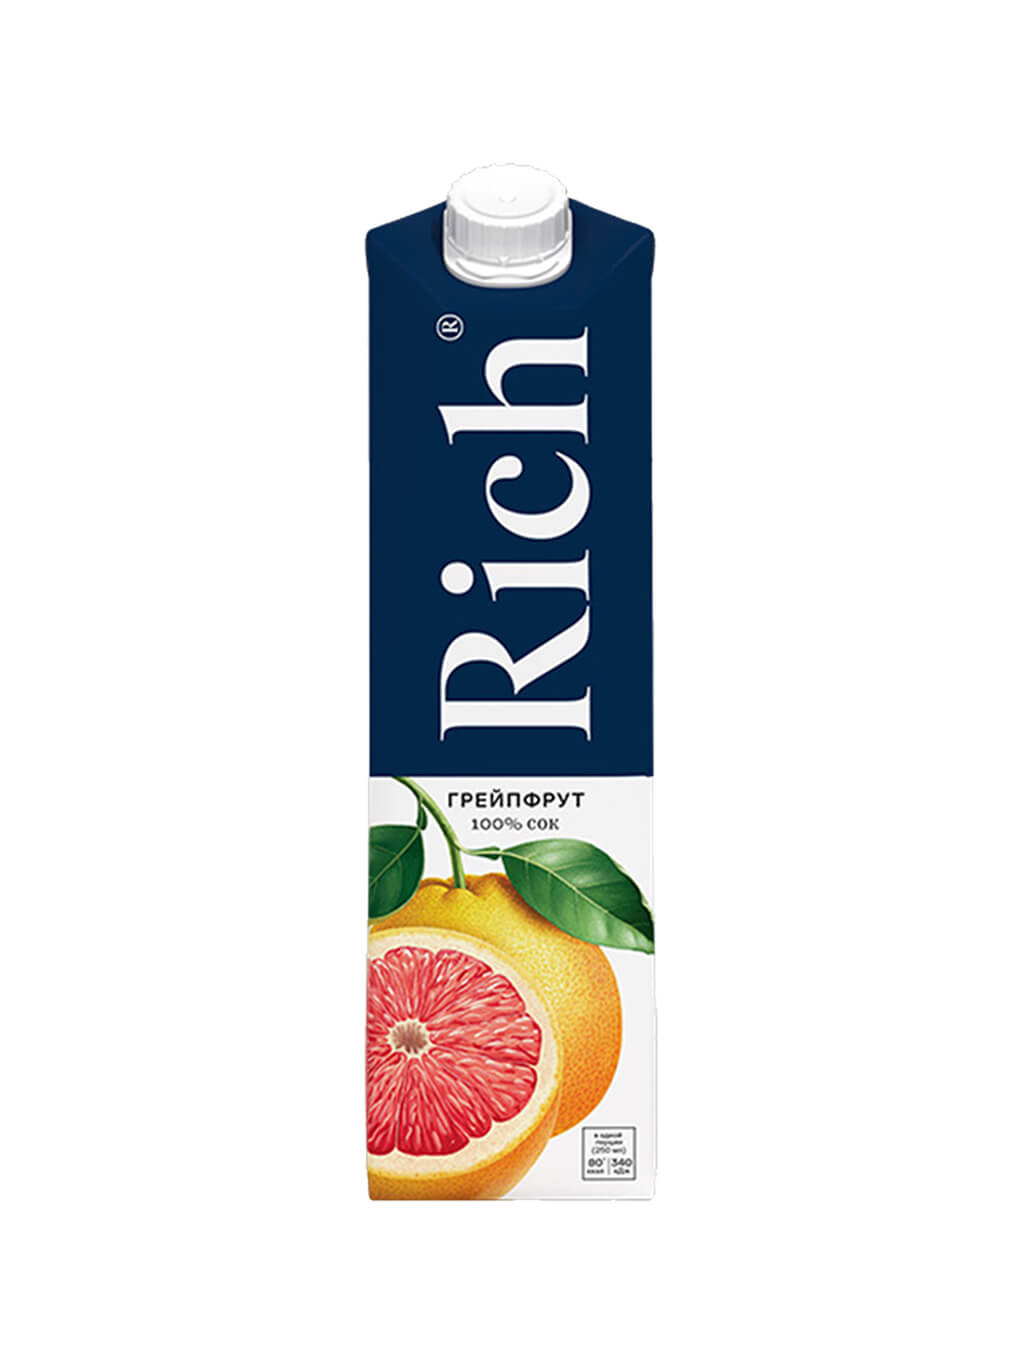 Рич бренд. Сок Рич 0.2. Грейпфрутовый сок Рич. Сок Rich грейпфрут 200 мл. Сок Rich мультифрукт с/к т/пак. 1л.